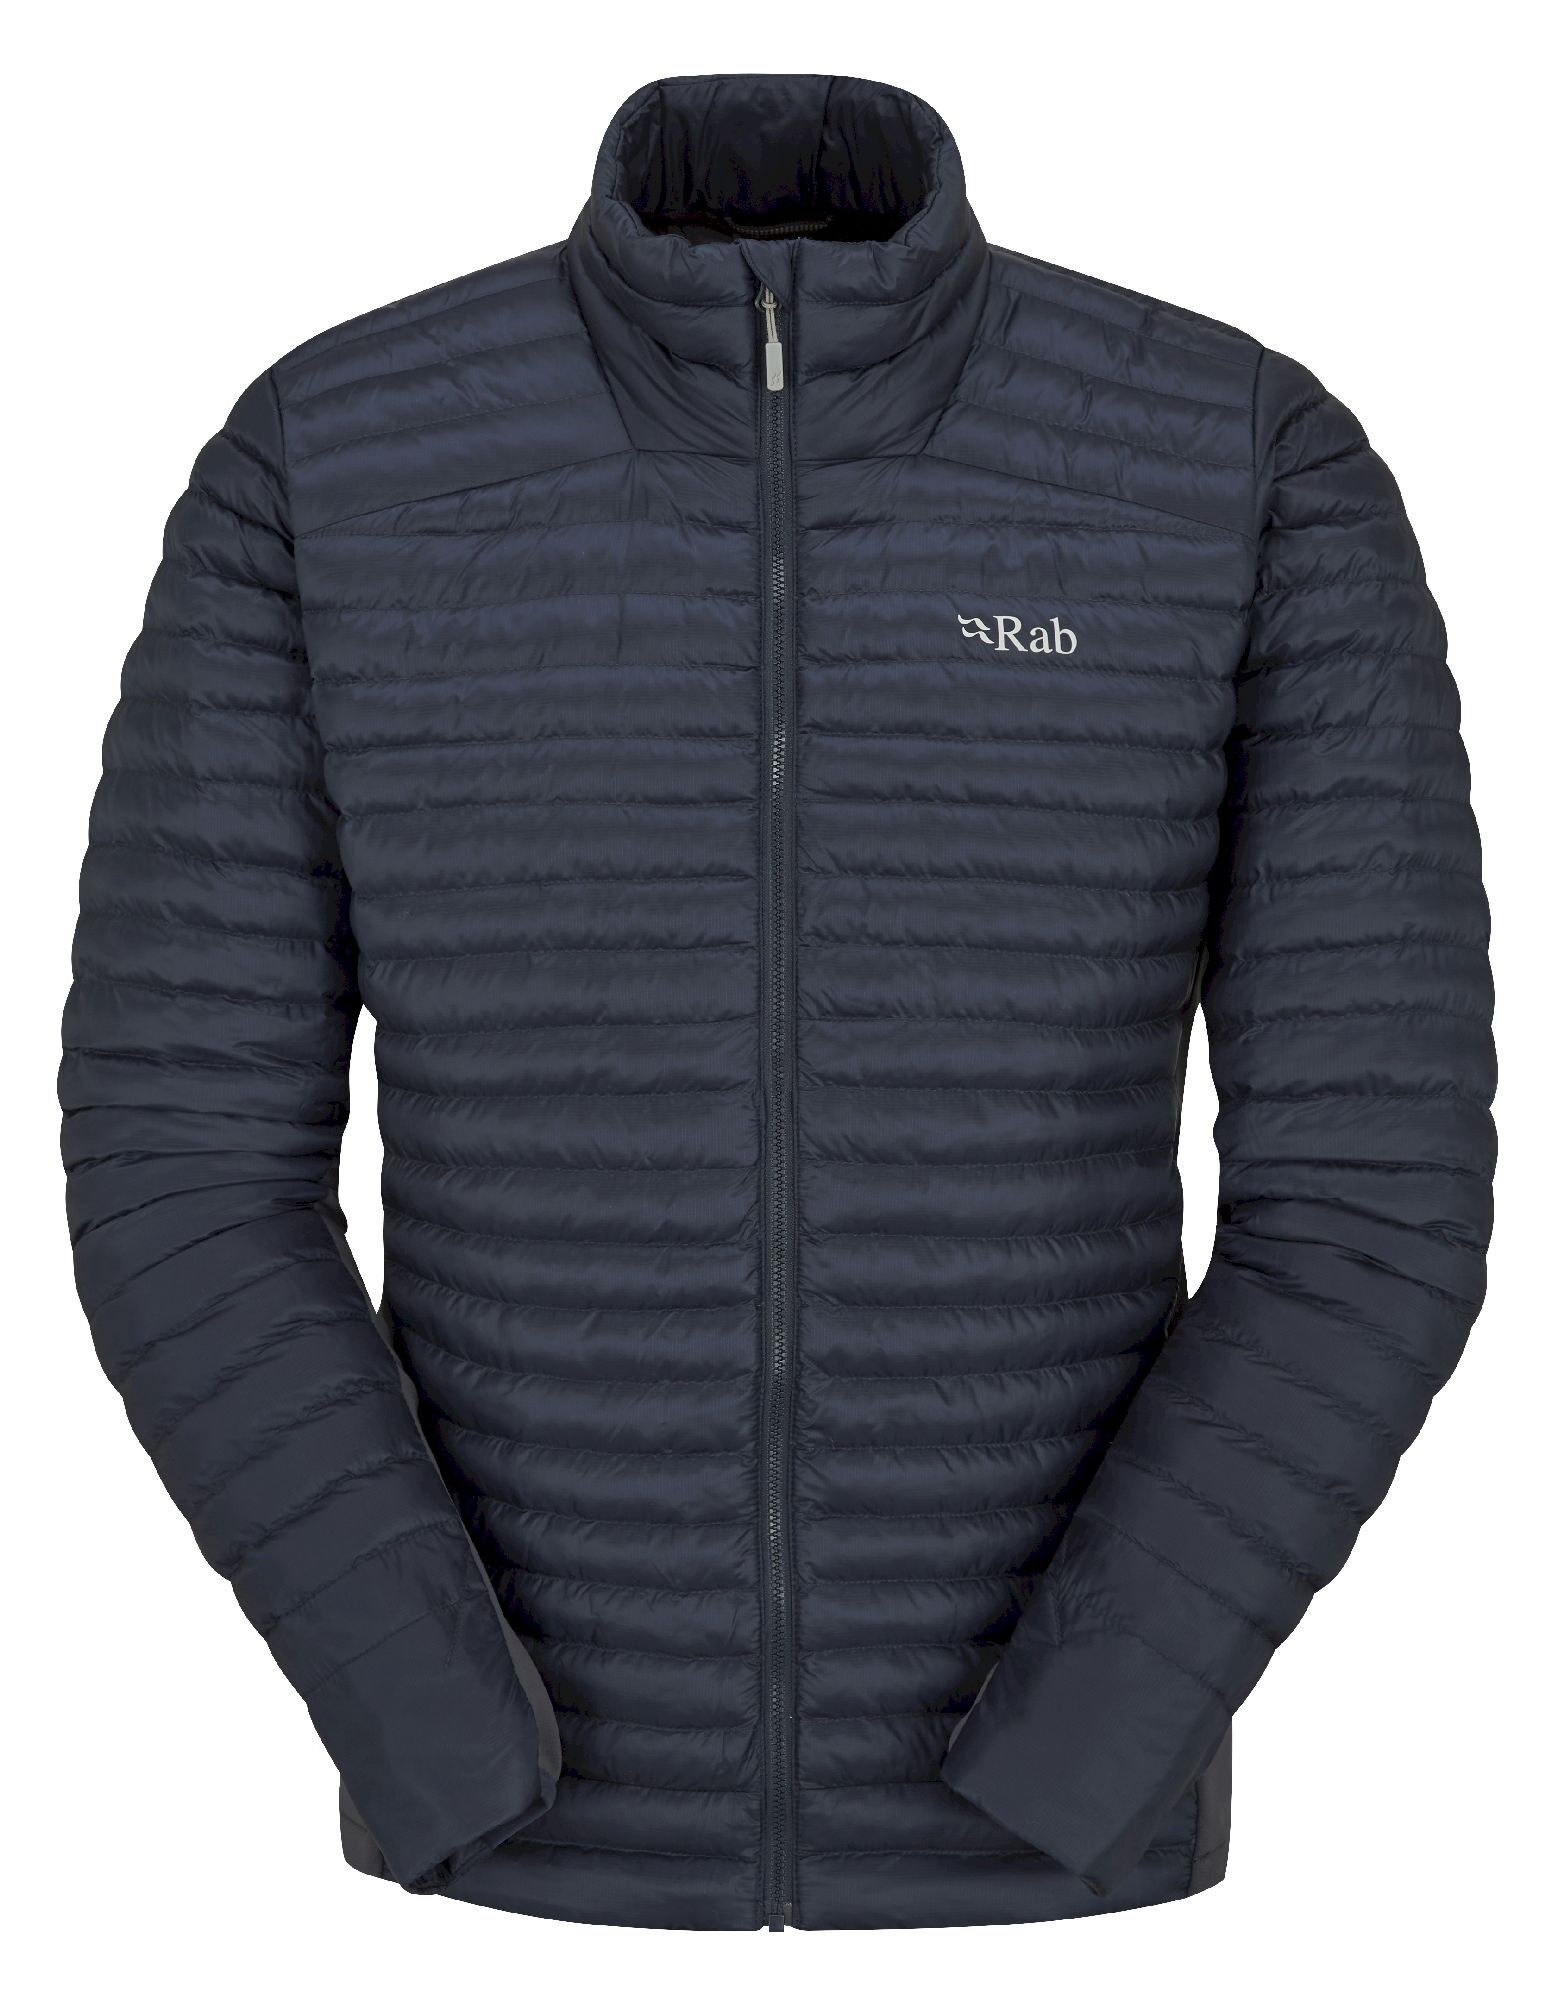 Rab Cirrus Flex 2.0 Jacket - Synthetic jacket - Men's